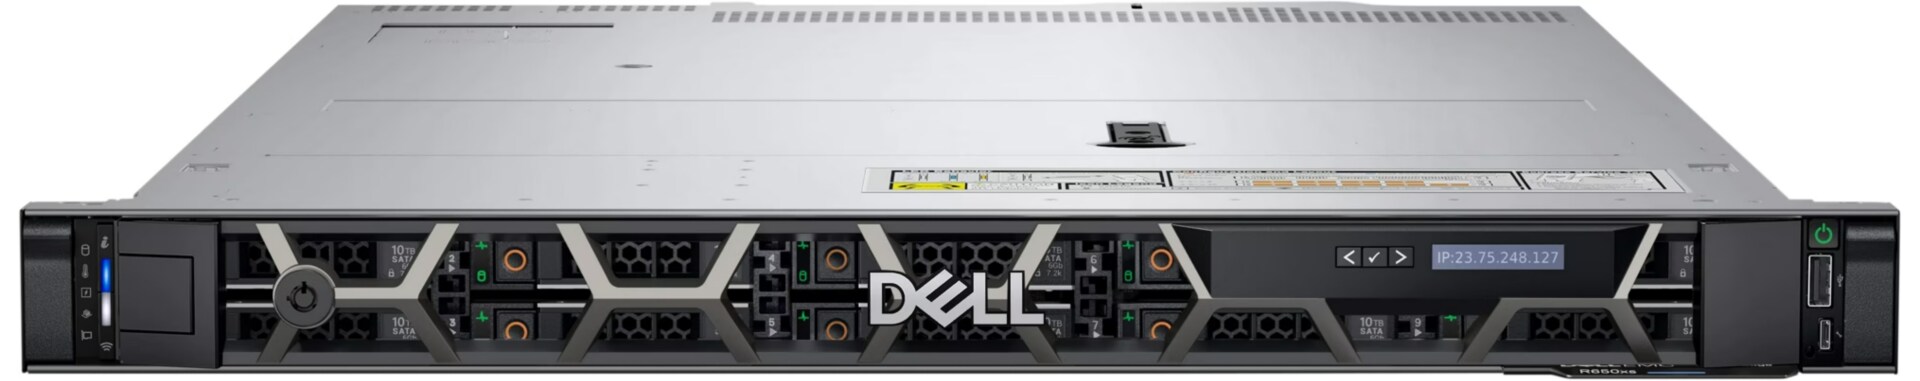 Dell EMC PowerEdge T550 2 Socket Tower Server